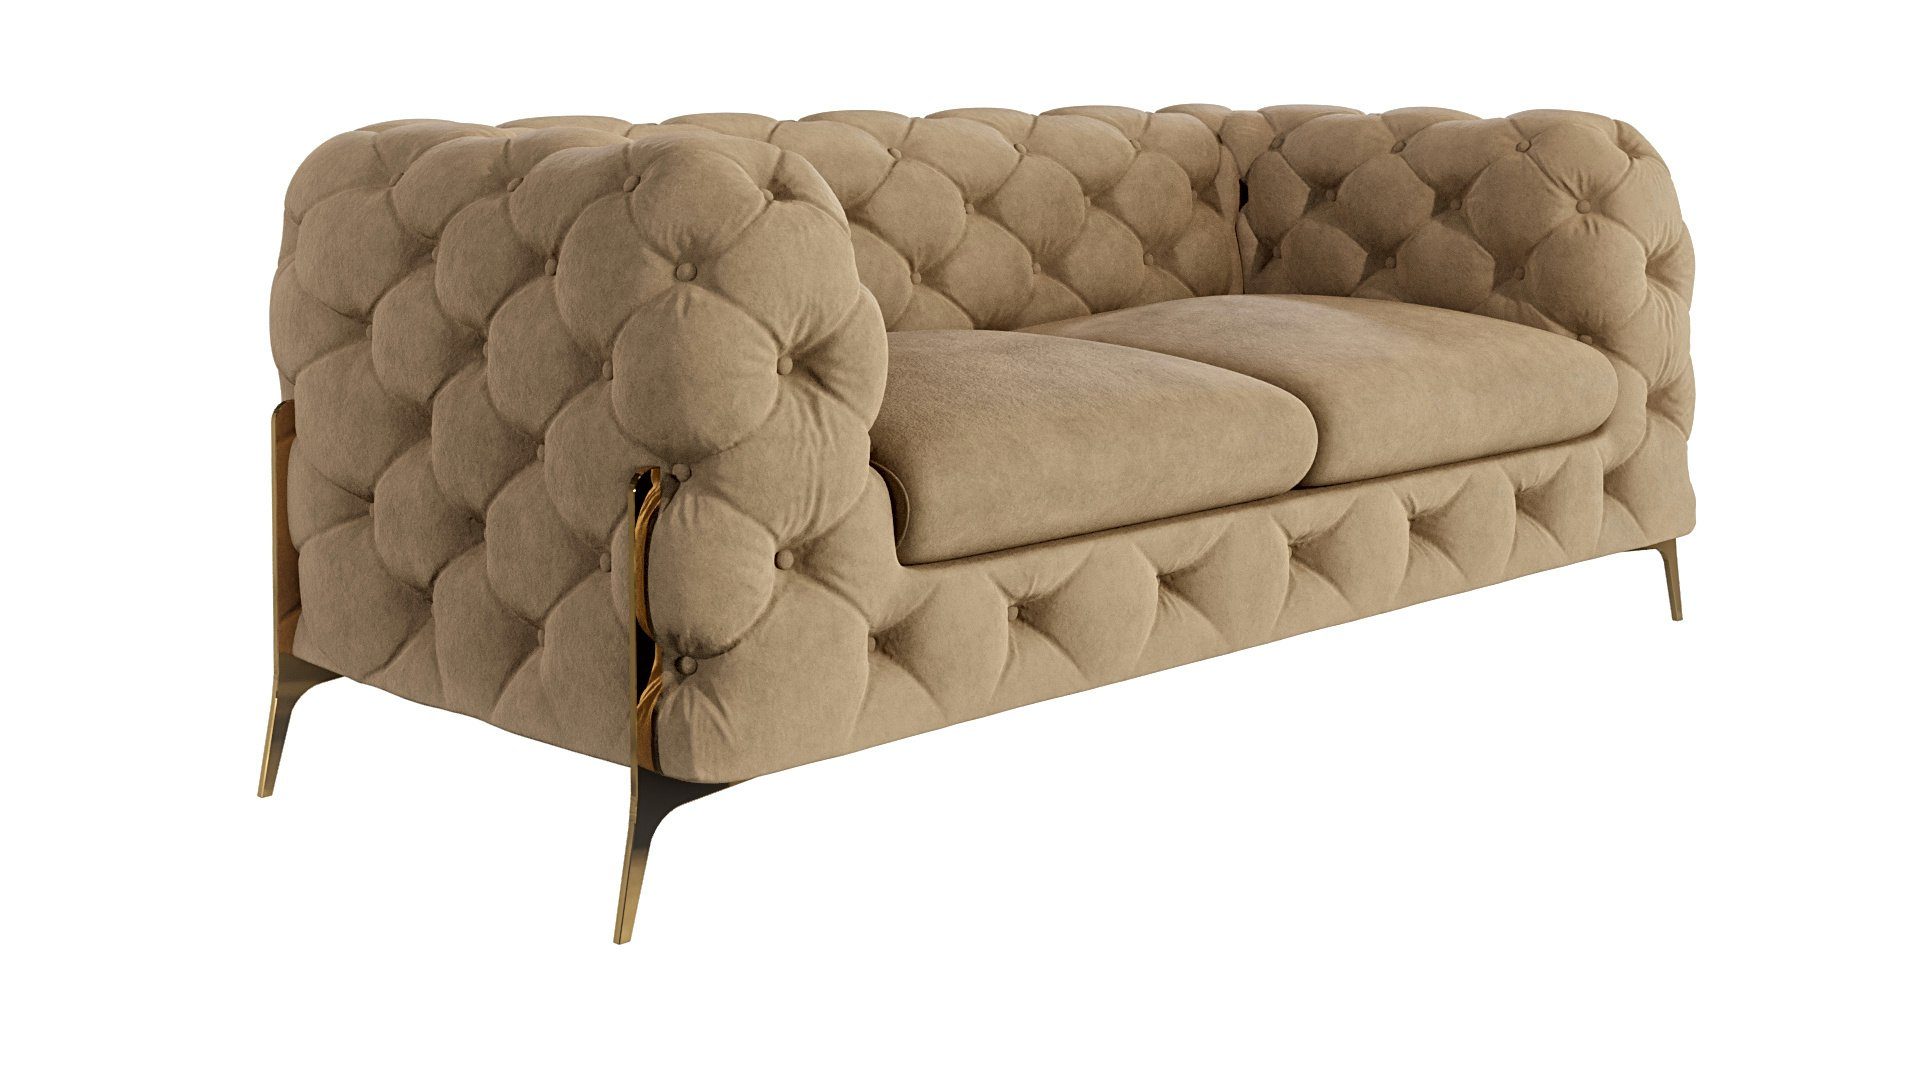 S-Style Möbel 2-Sitzer Ashley Chesterfield Sofa mit Goldene Metall Füßen, mit Wellenfederung